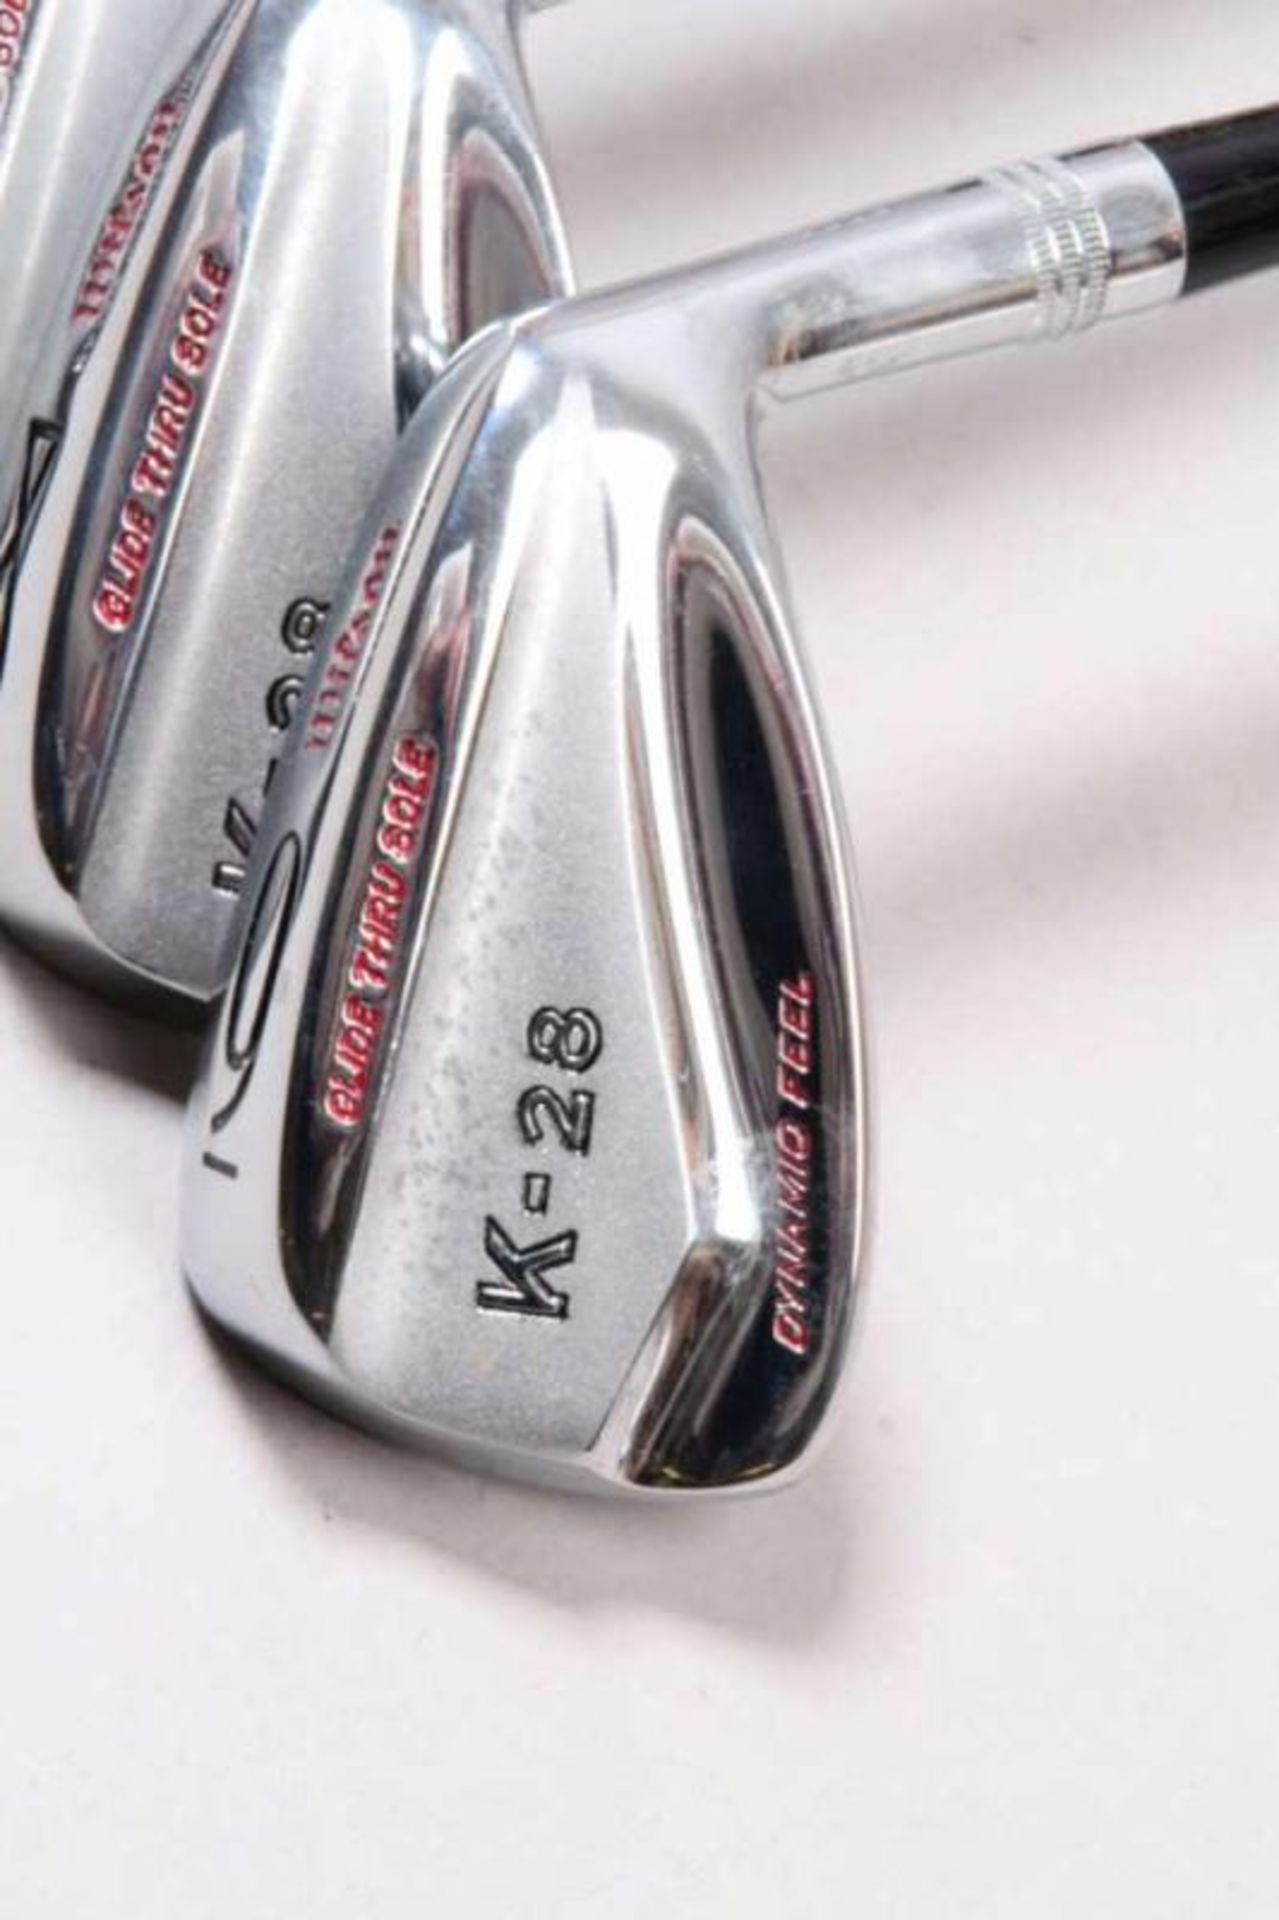 Golfset.Wilson K-28, Eisen 2-9, PW, Patter sowie Holz 1,3, 4 und 5, Aqua Tite, 4300 Strata Bloc, - Bild 3 aus 5